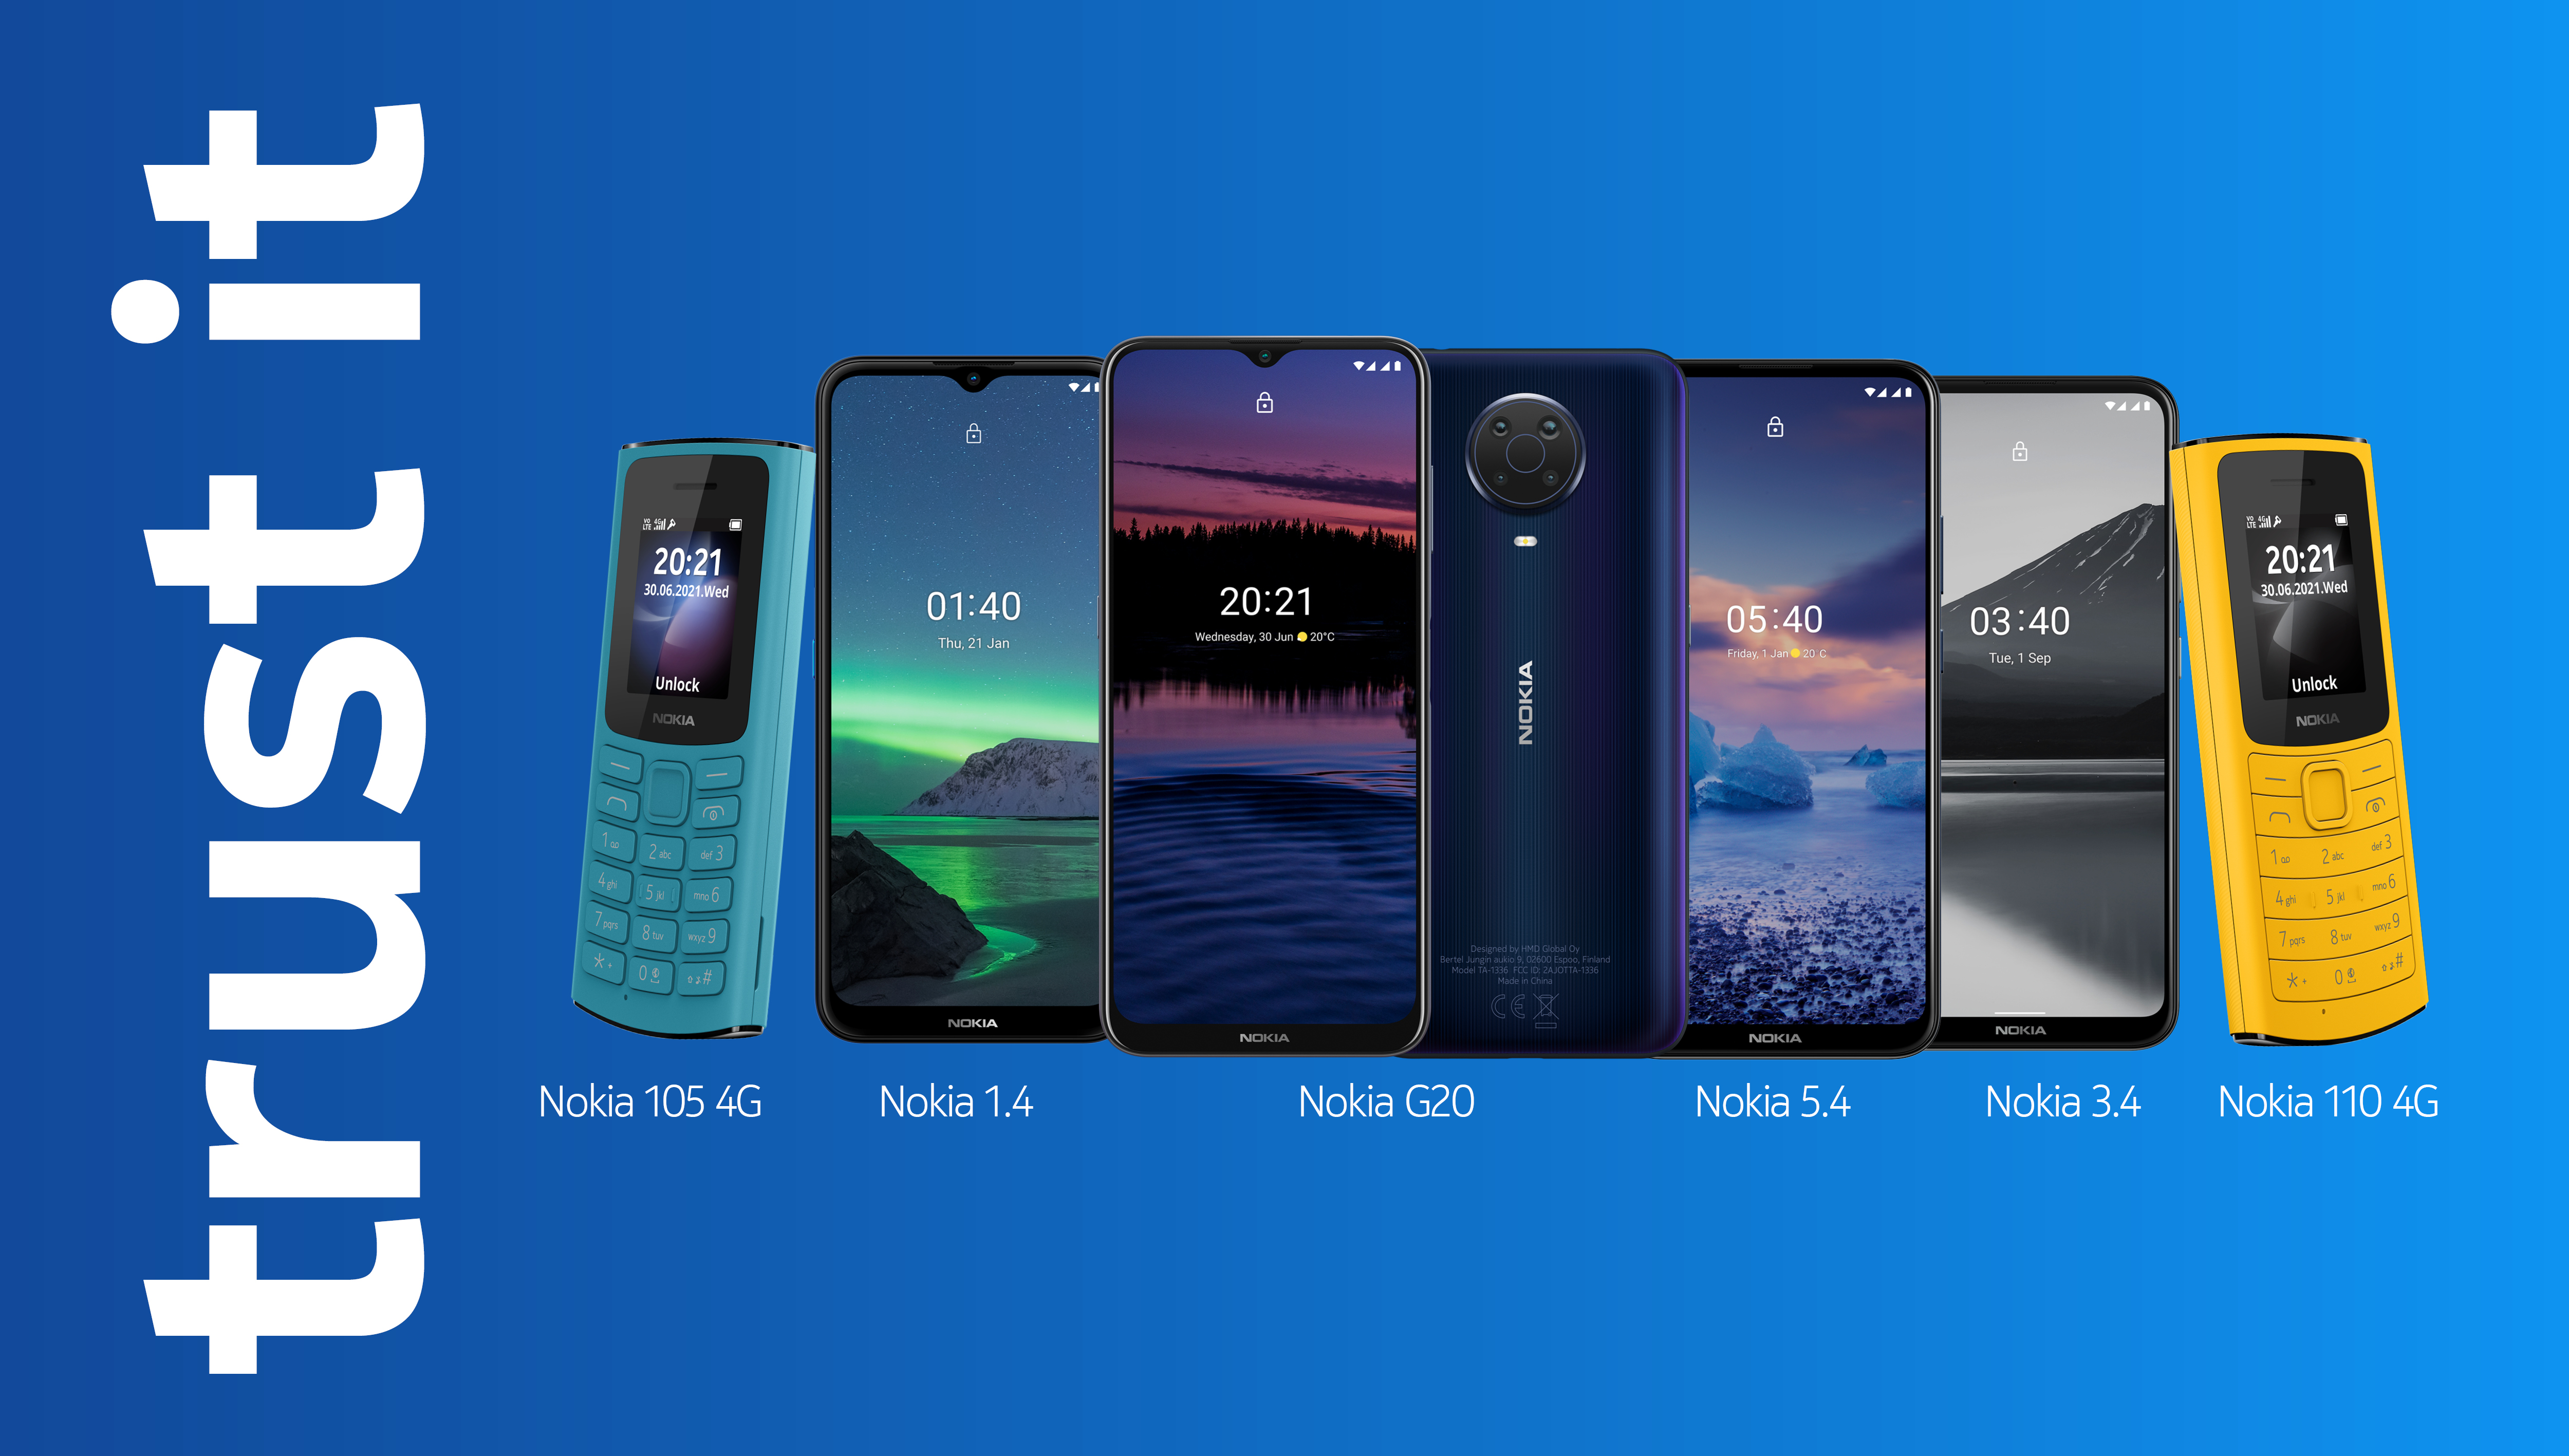 Nokia เผยตลาดไทยตอบรับดี หลังเดินเกมตลาดเข้มข้นครอบคลุมฟีเจอร์โฟน-สมาร์ทโฟน